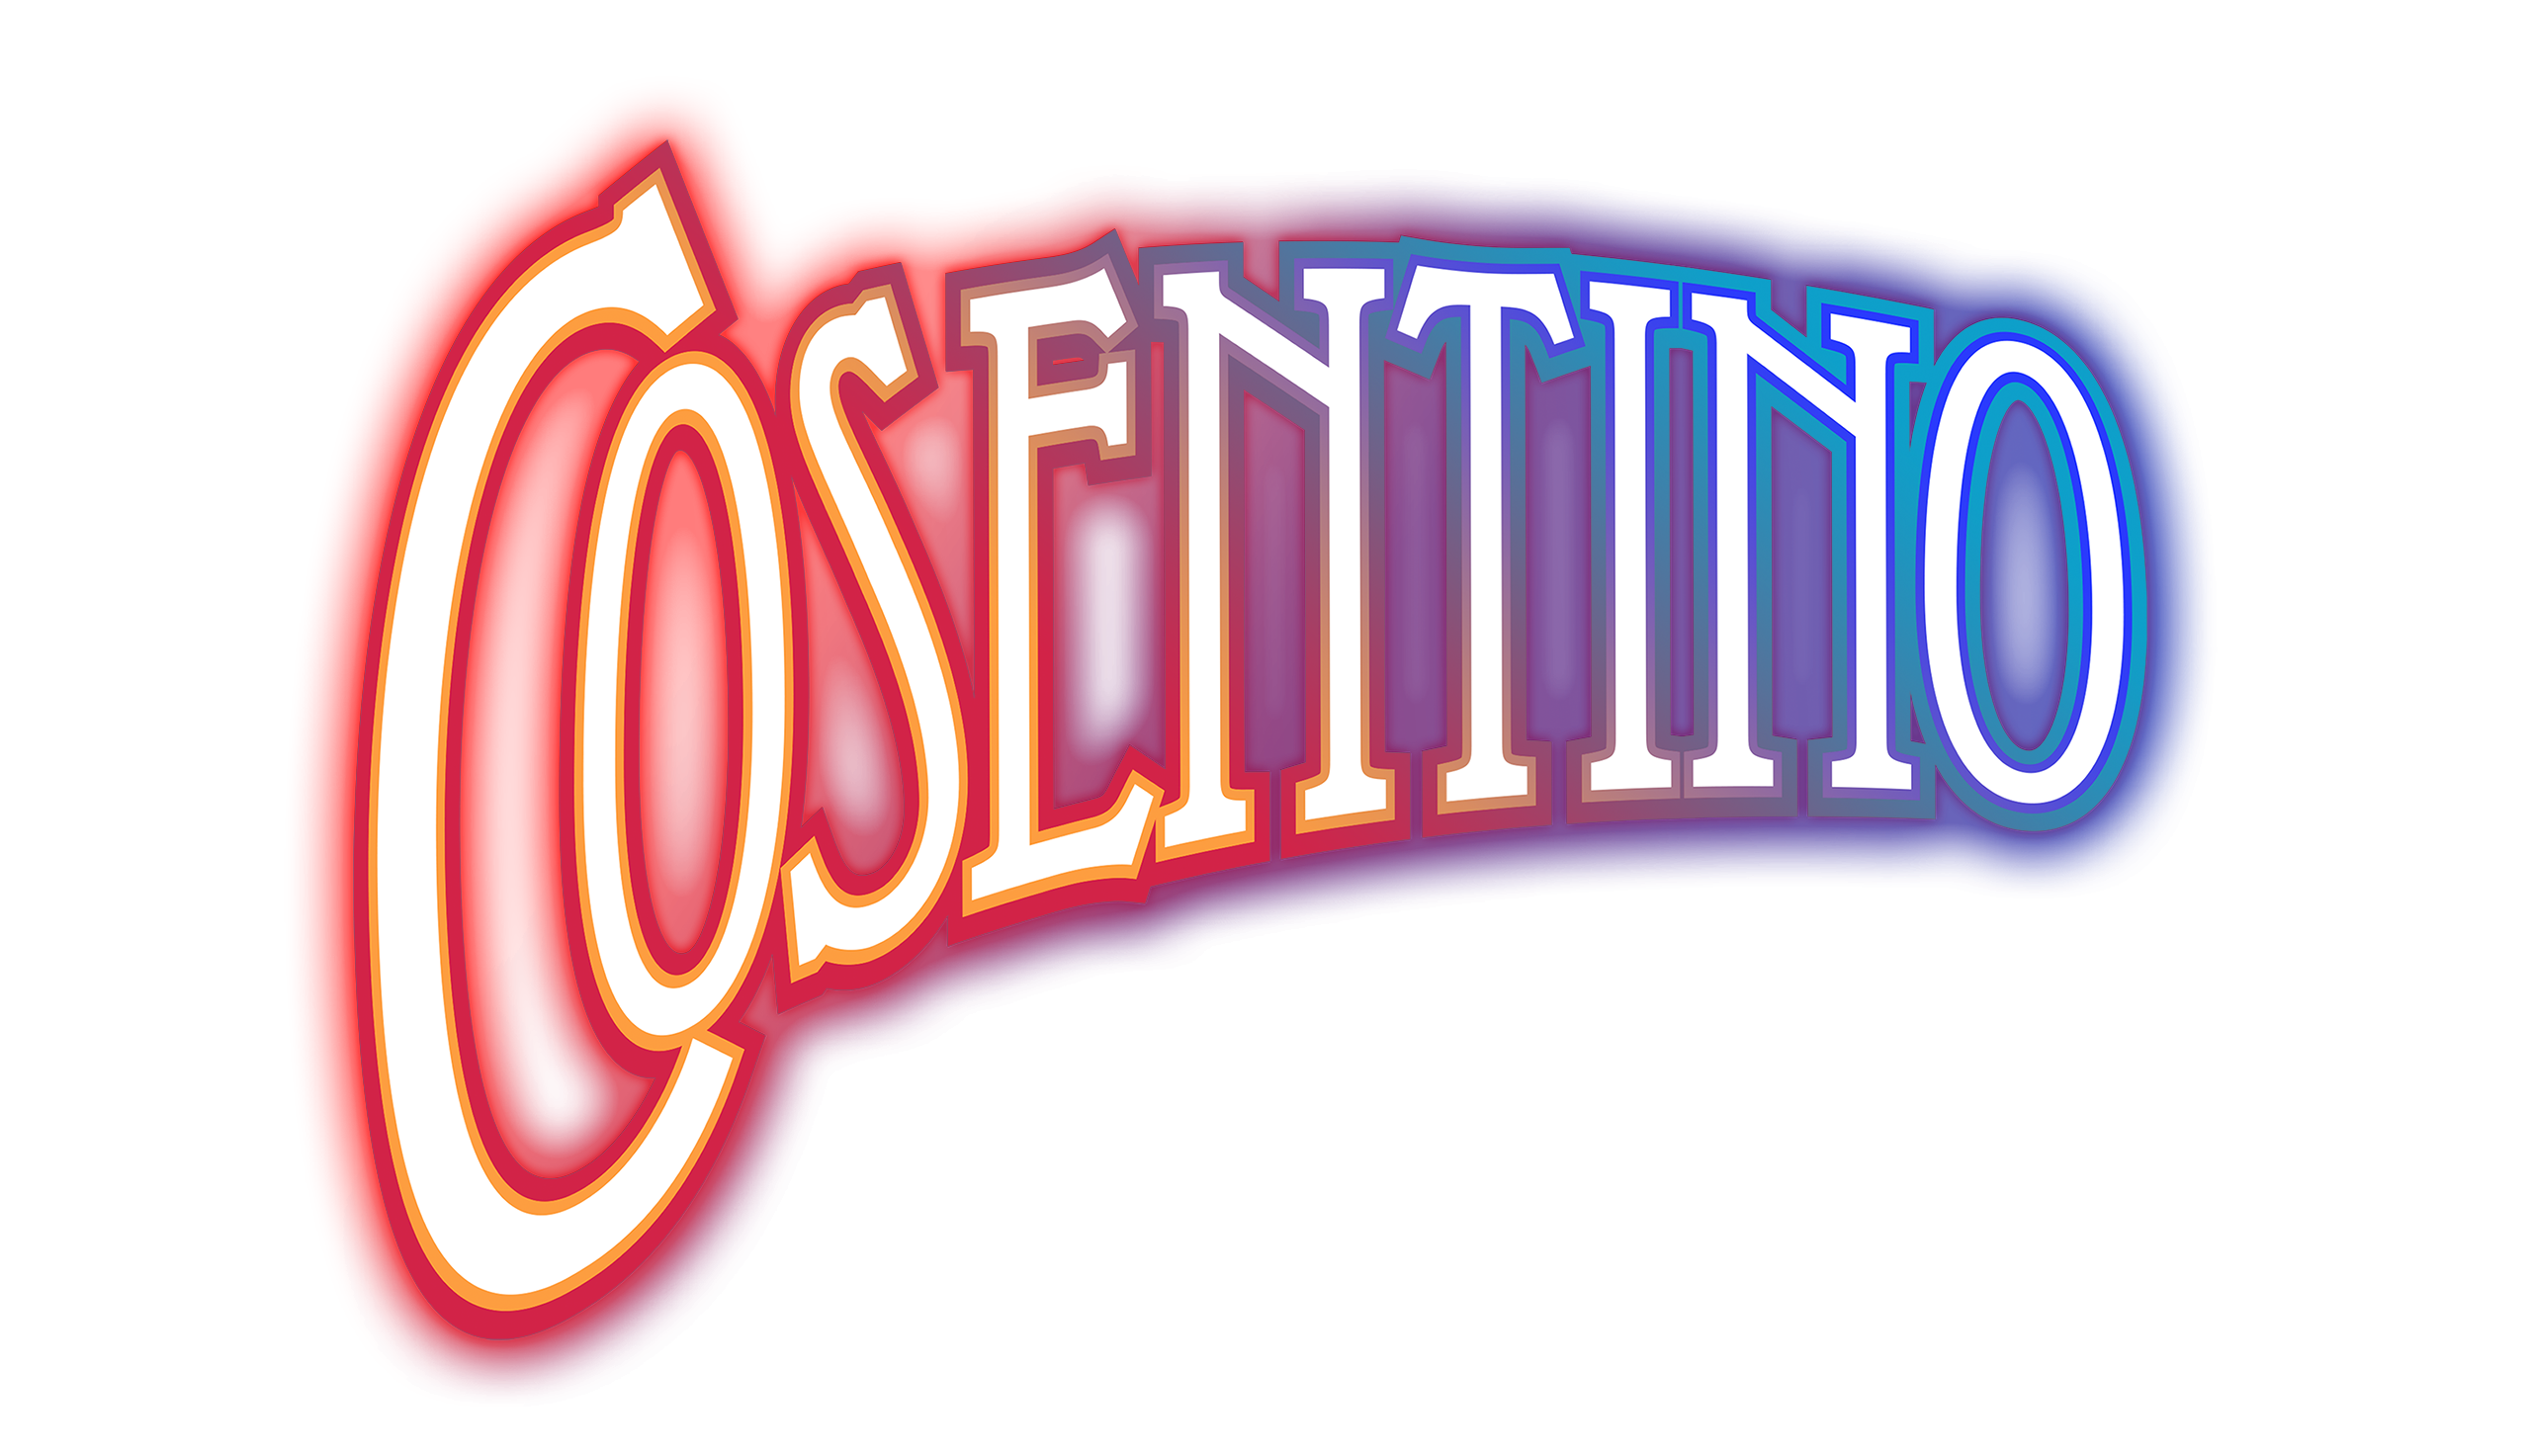 Cosentino Merchandise Store